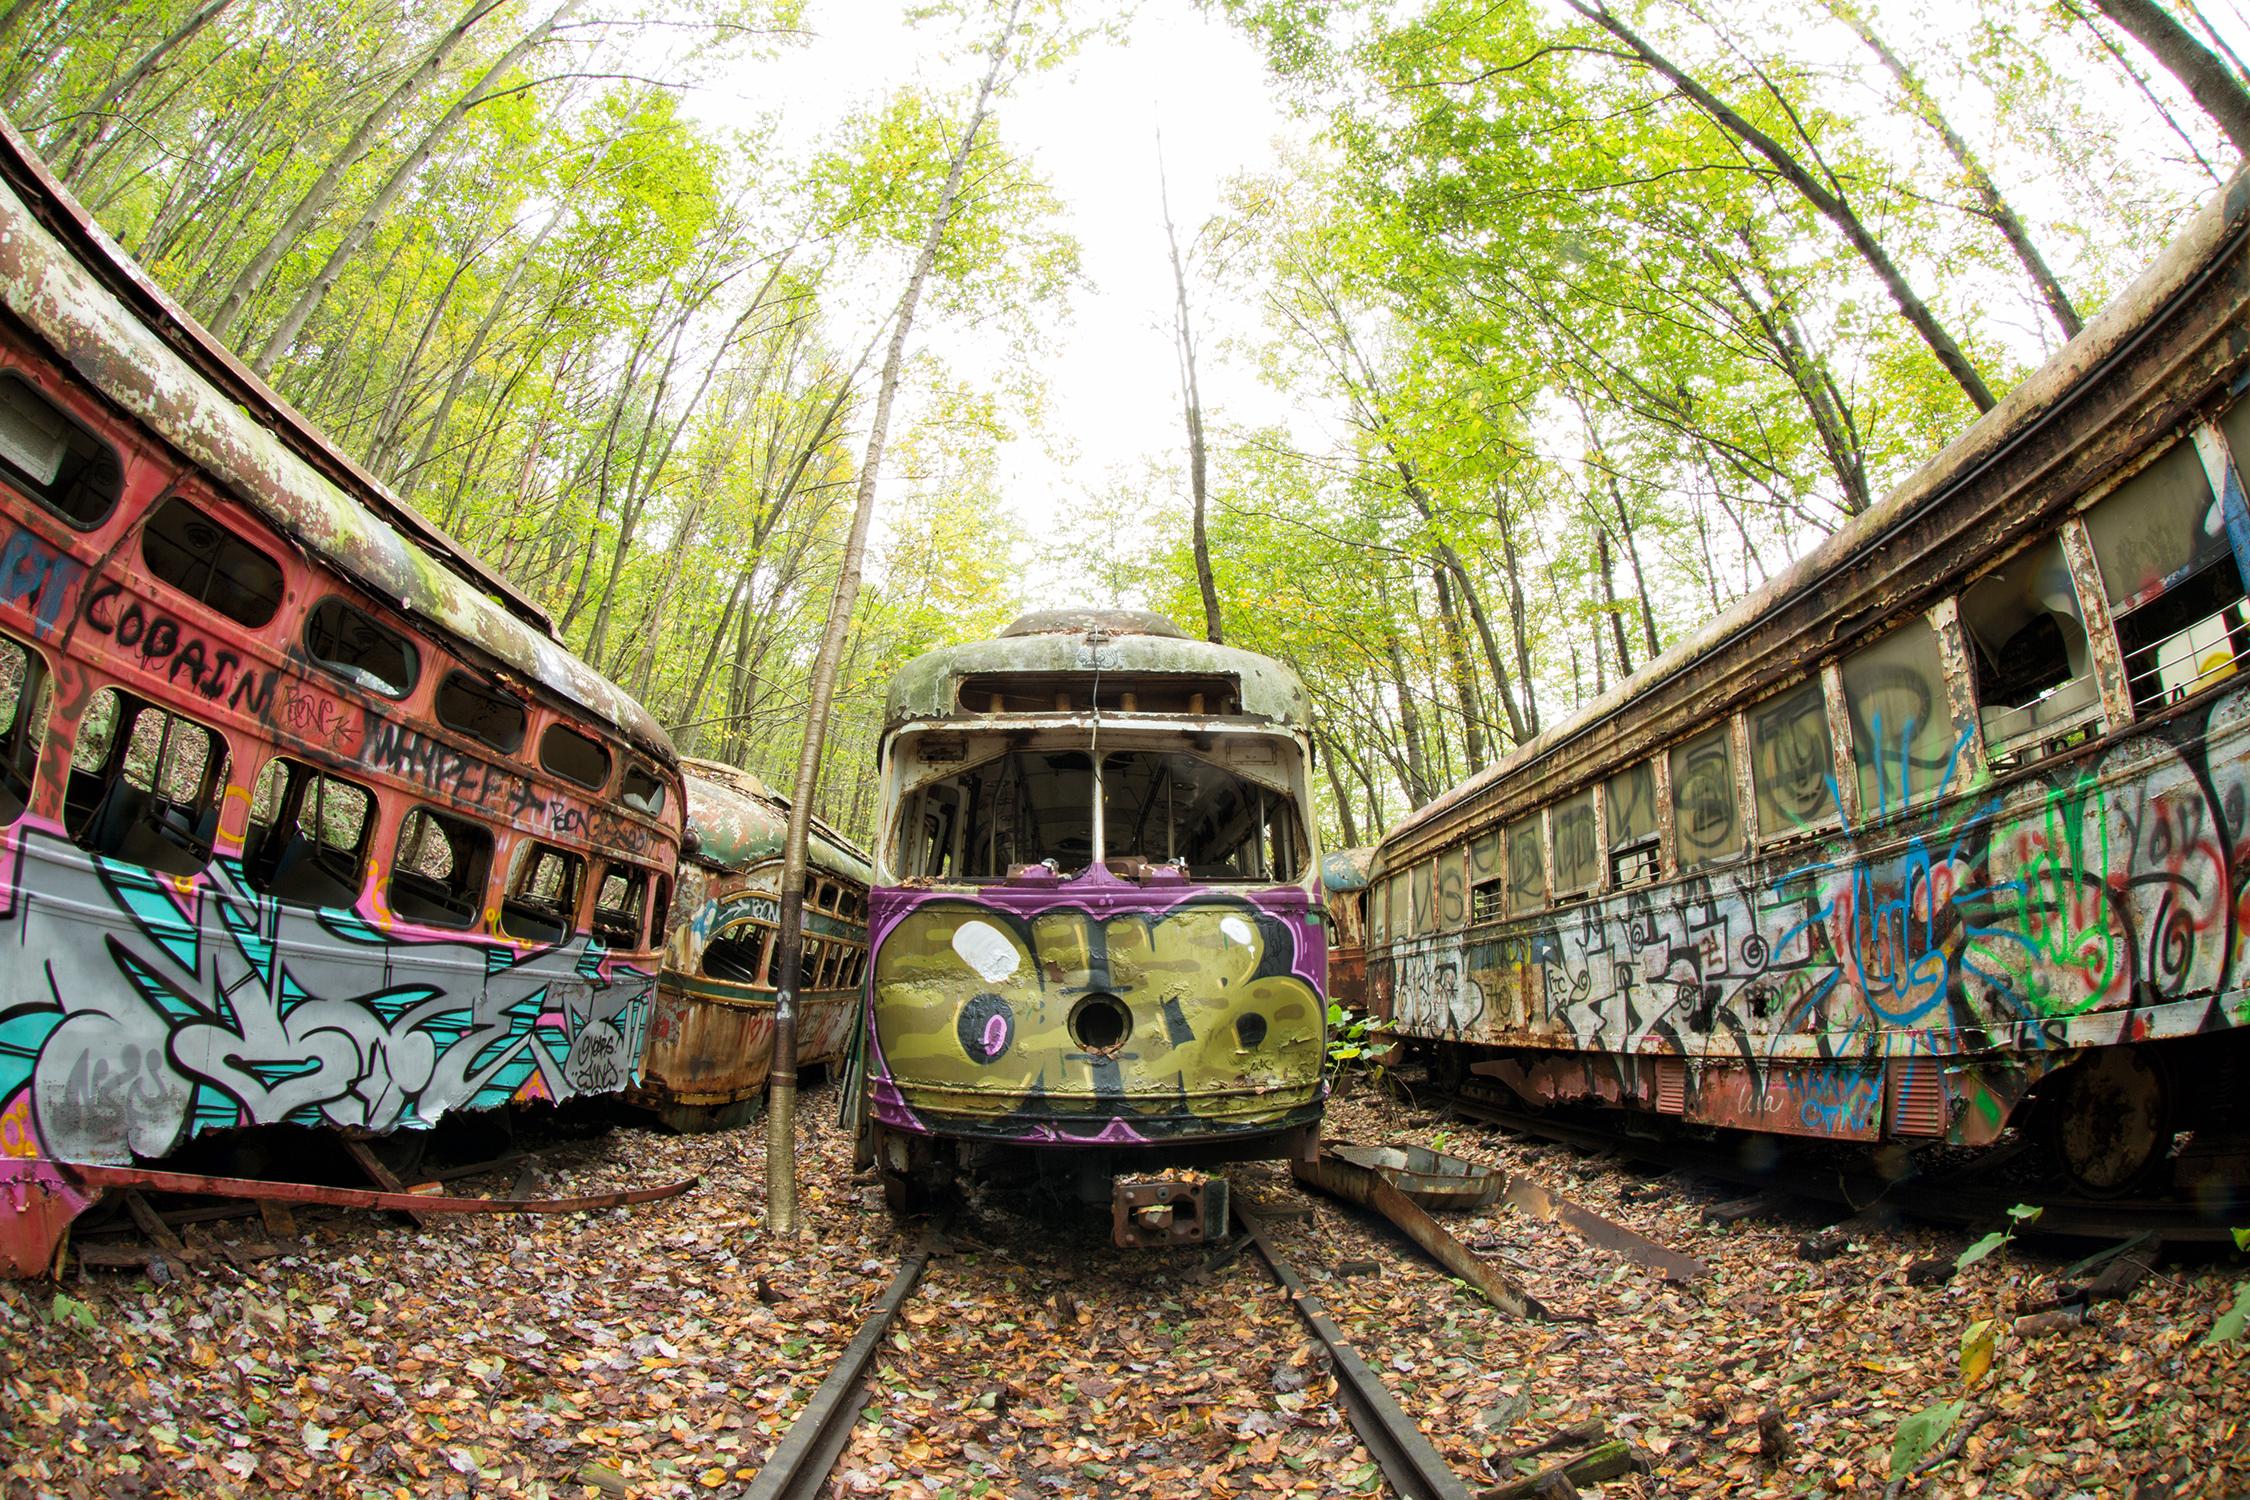 Rebecca Skinner Color Photograph - "Graffiti Yard", contemporary, trolley, landscape, rusty, train, photograph